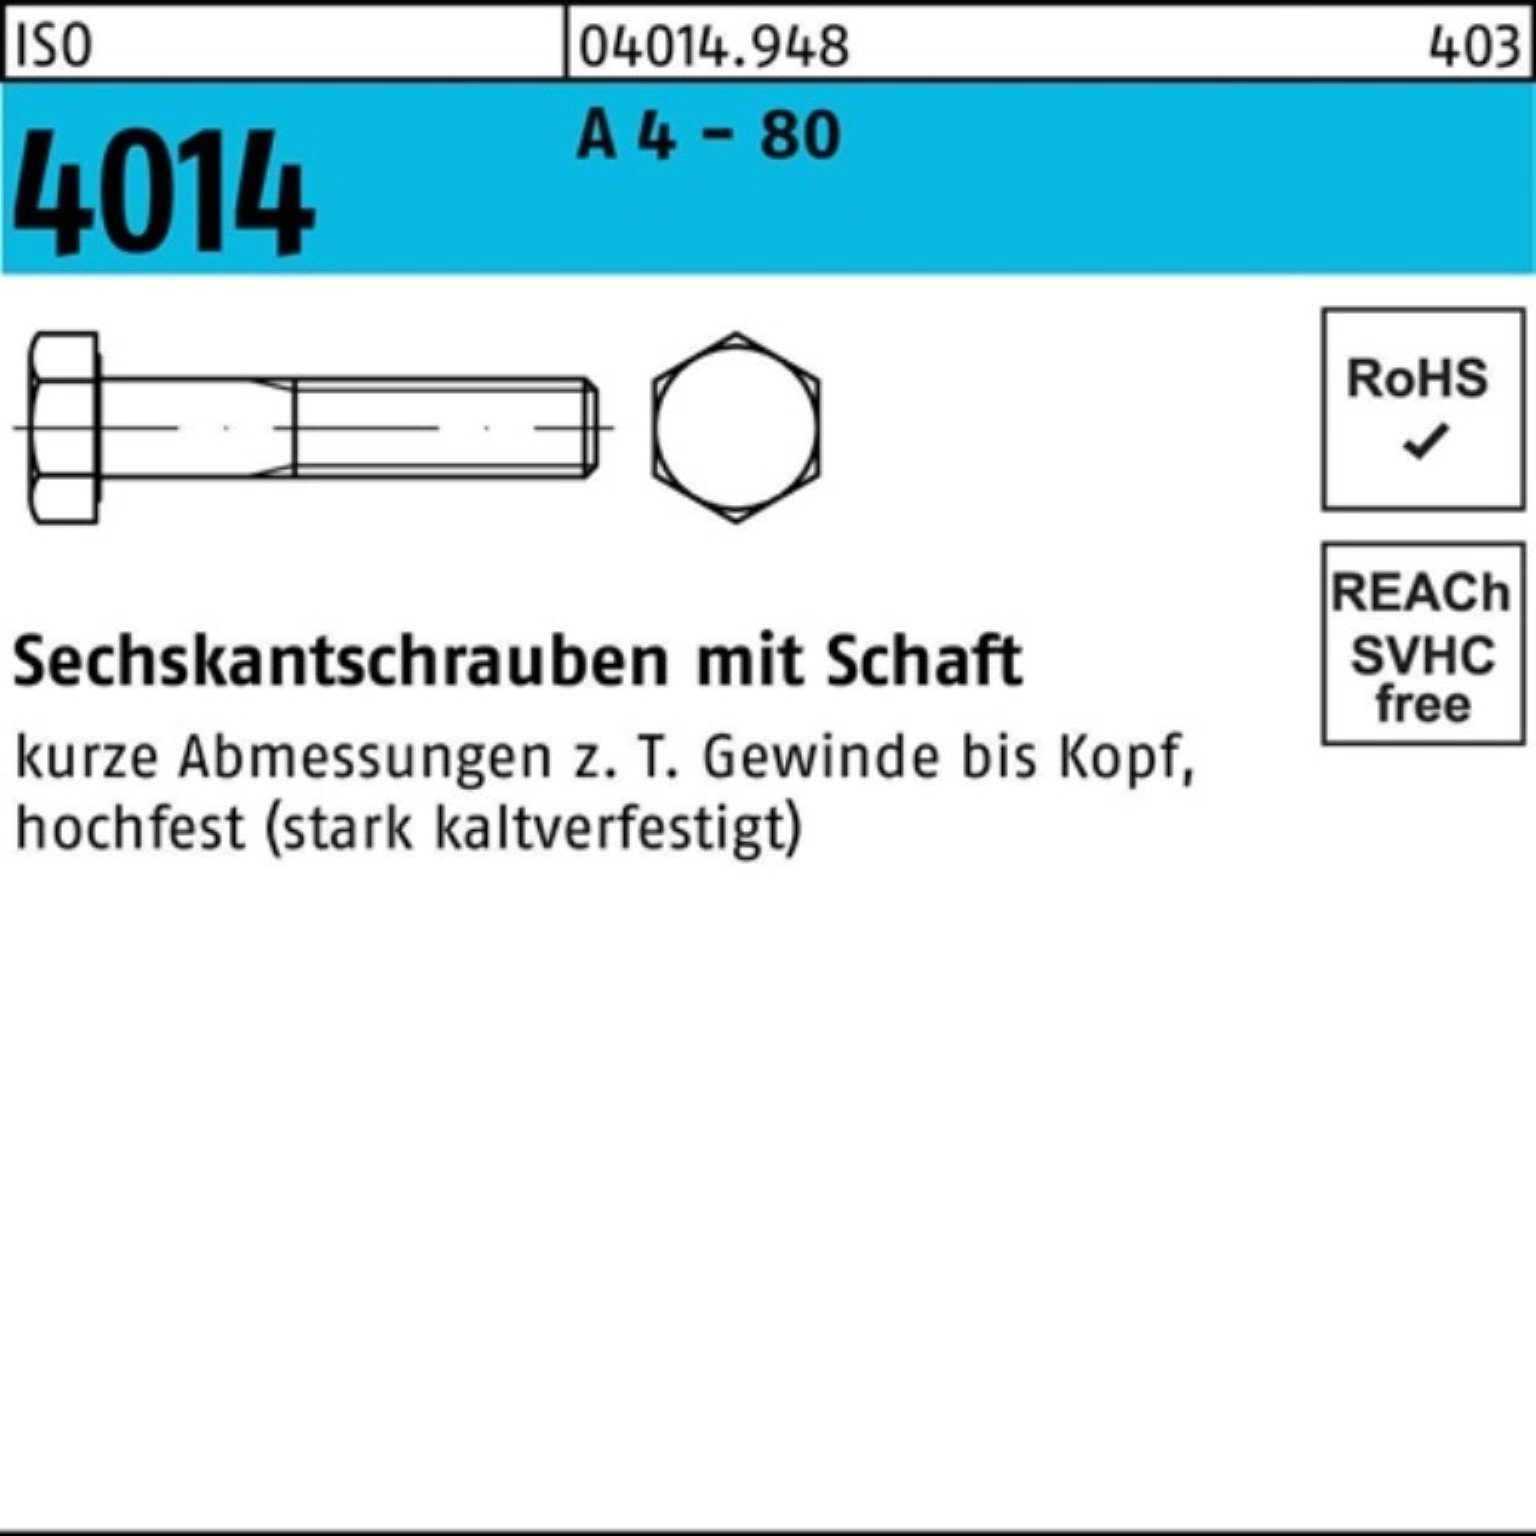 Bufab Sechskantschraube 100er 80 70 Sechskantschraube A 1 Stück - M20x Schaft 4014 4 Pack ISO